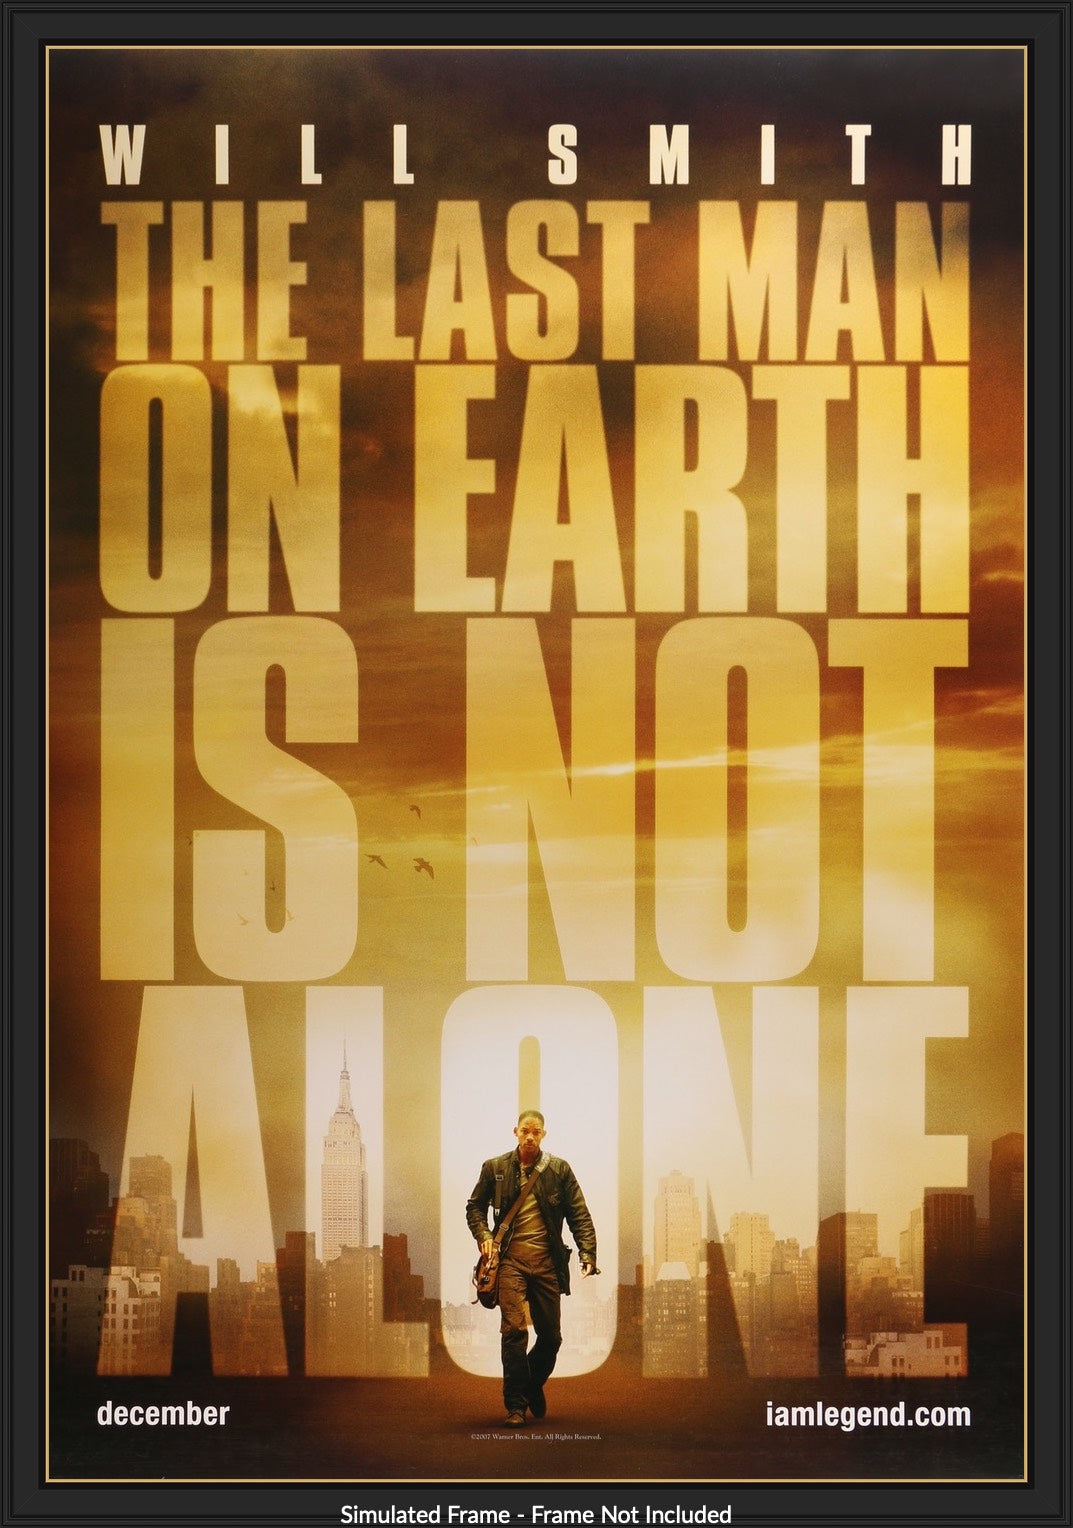 I Am Legend (2007) original movie poster for sale at Original Film Art